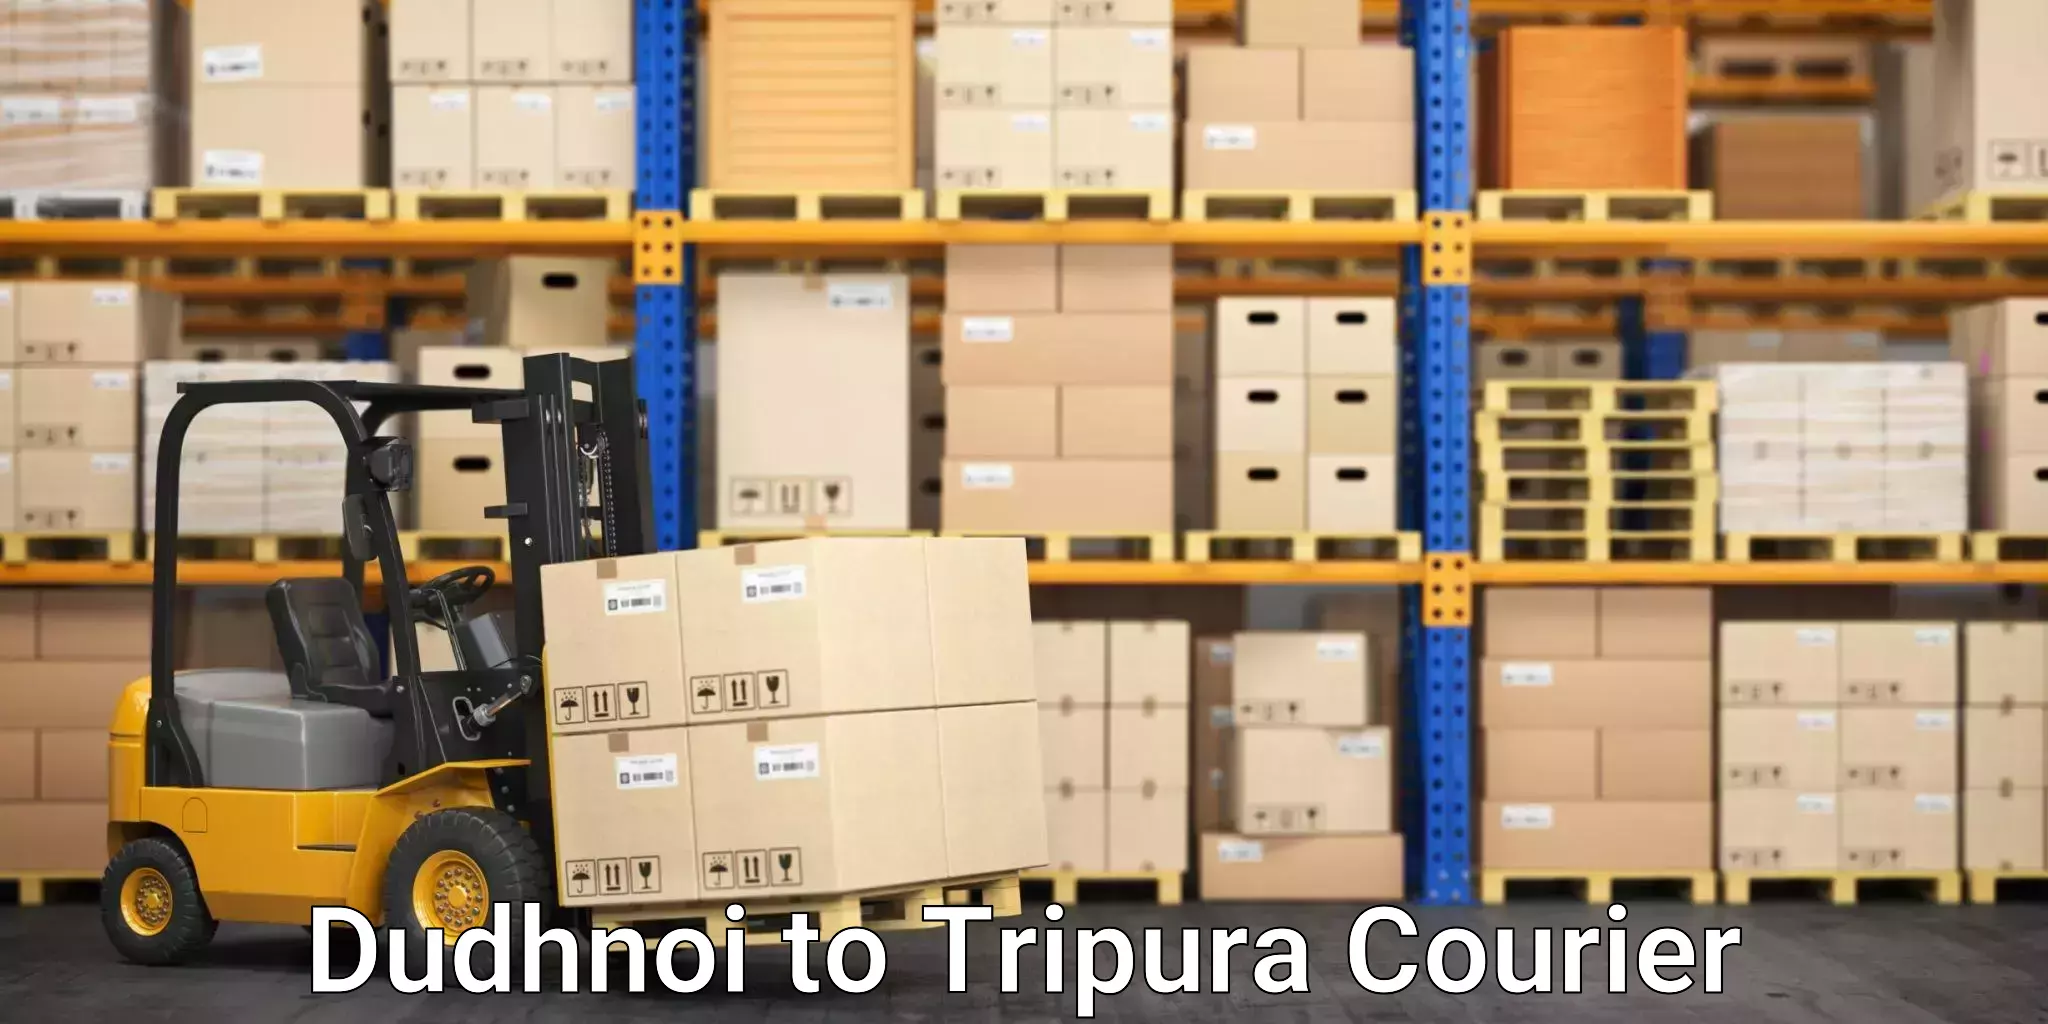 Bulk courier orders Dudhnoi to Tripura